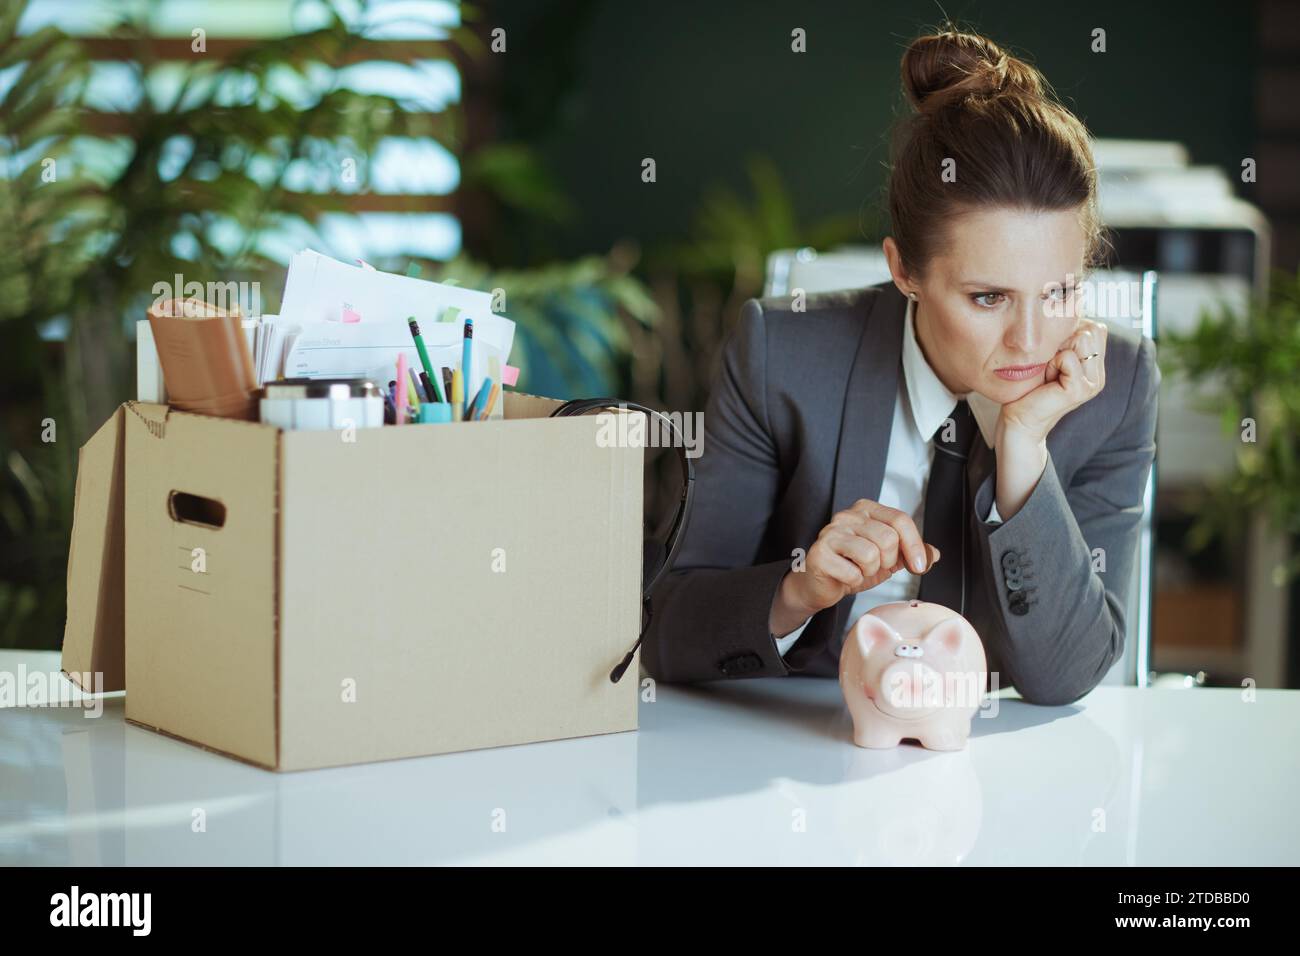 Nouveau travail. pensive moderne 40 ans femme employée dans le bureau vert moderne en costume d'affaires gris avec des effets personnels dans la boîte en carton mettant coi Banque D'Images